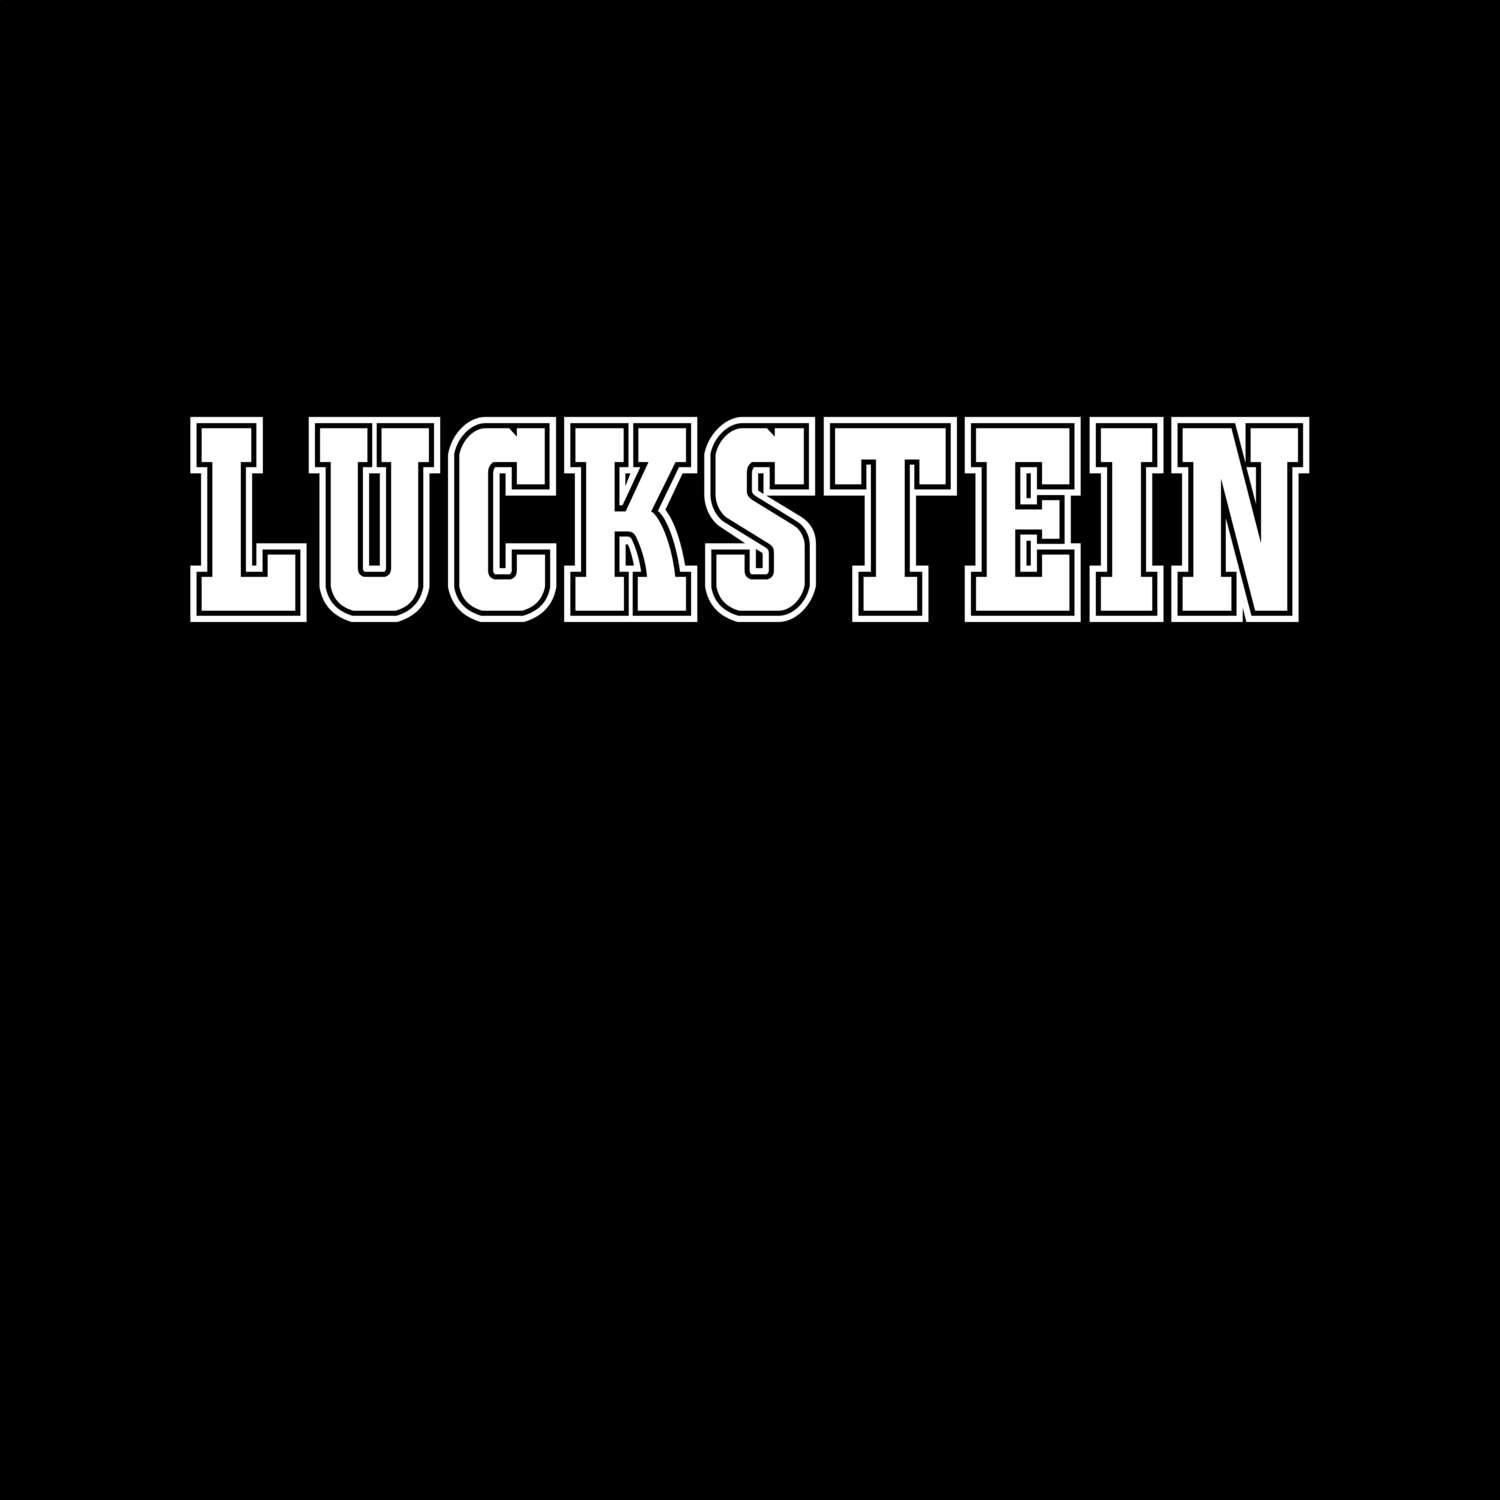 Luckstein T-Shirt »Classic«